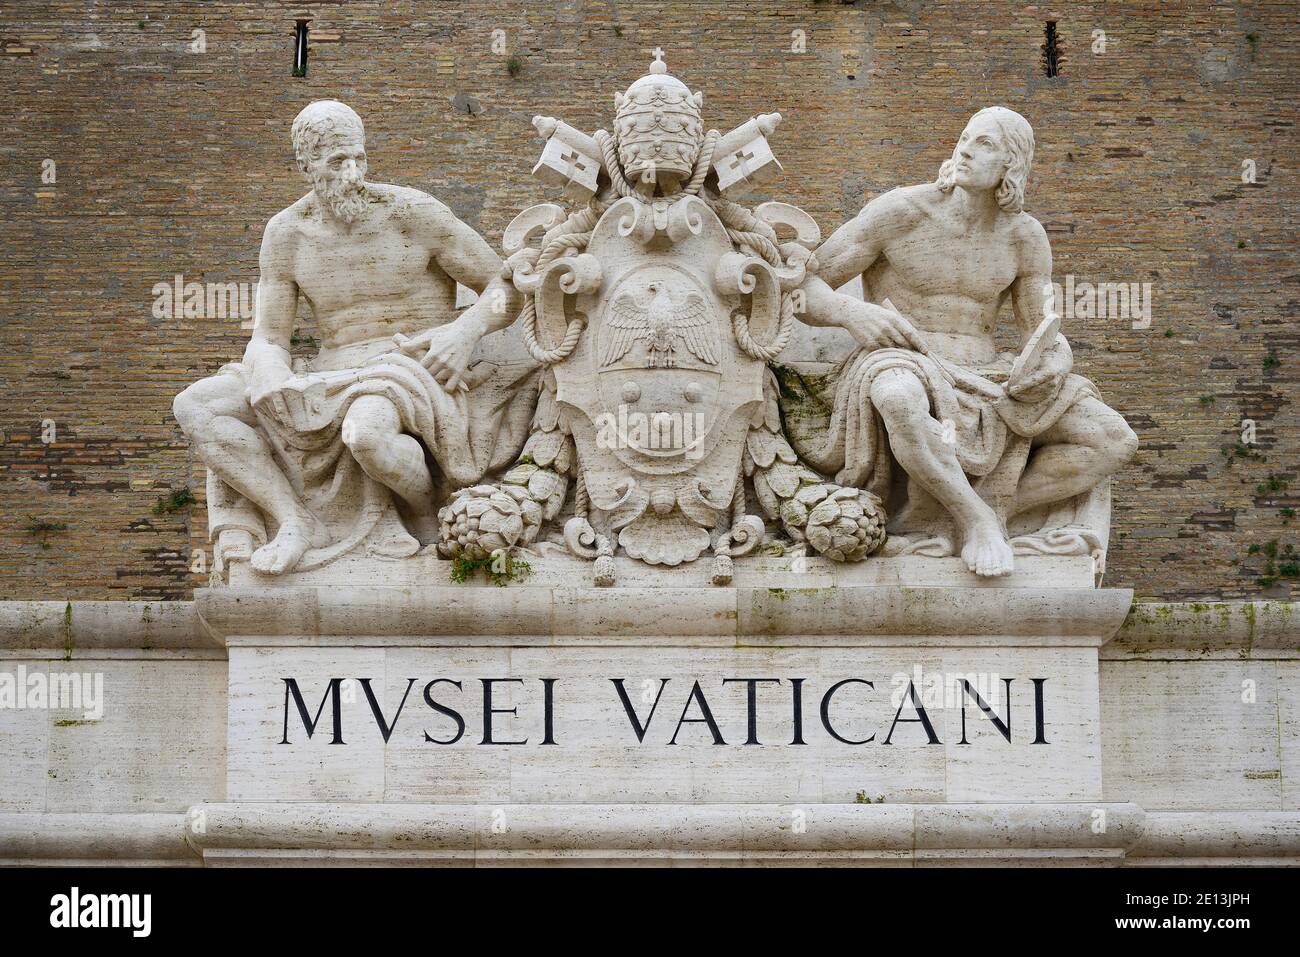 Roma. Italia. Portal de entrada de los Museos Vaticanos con el Escudo de armas del Papa Pío XI (centro), flanqueado por estatuas del Foto de stock